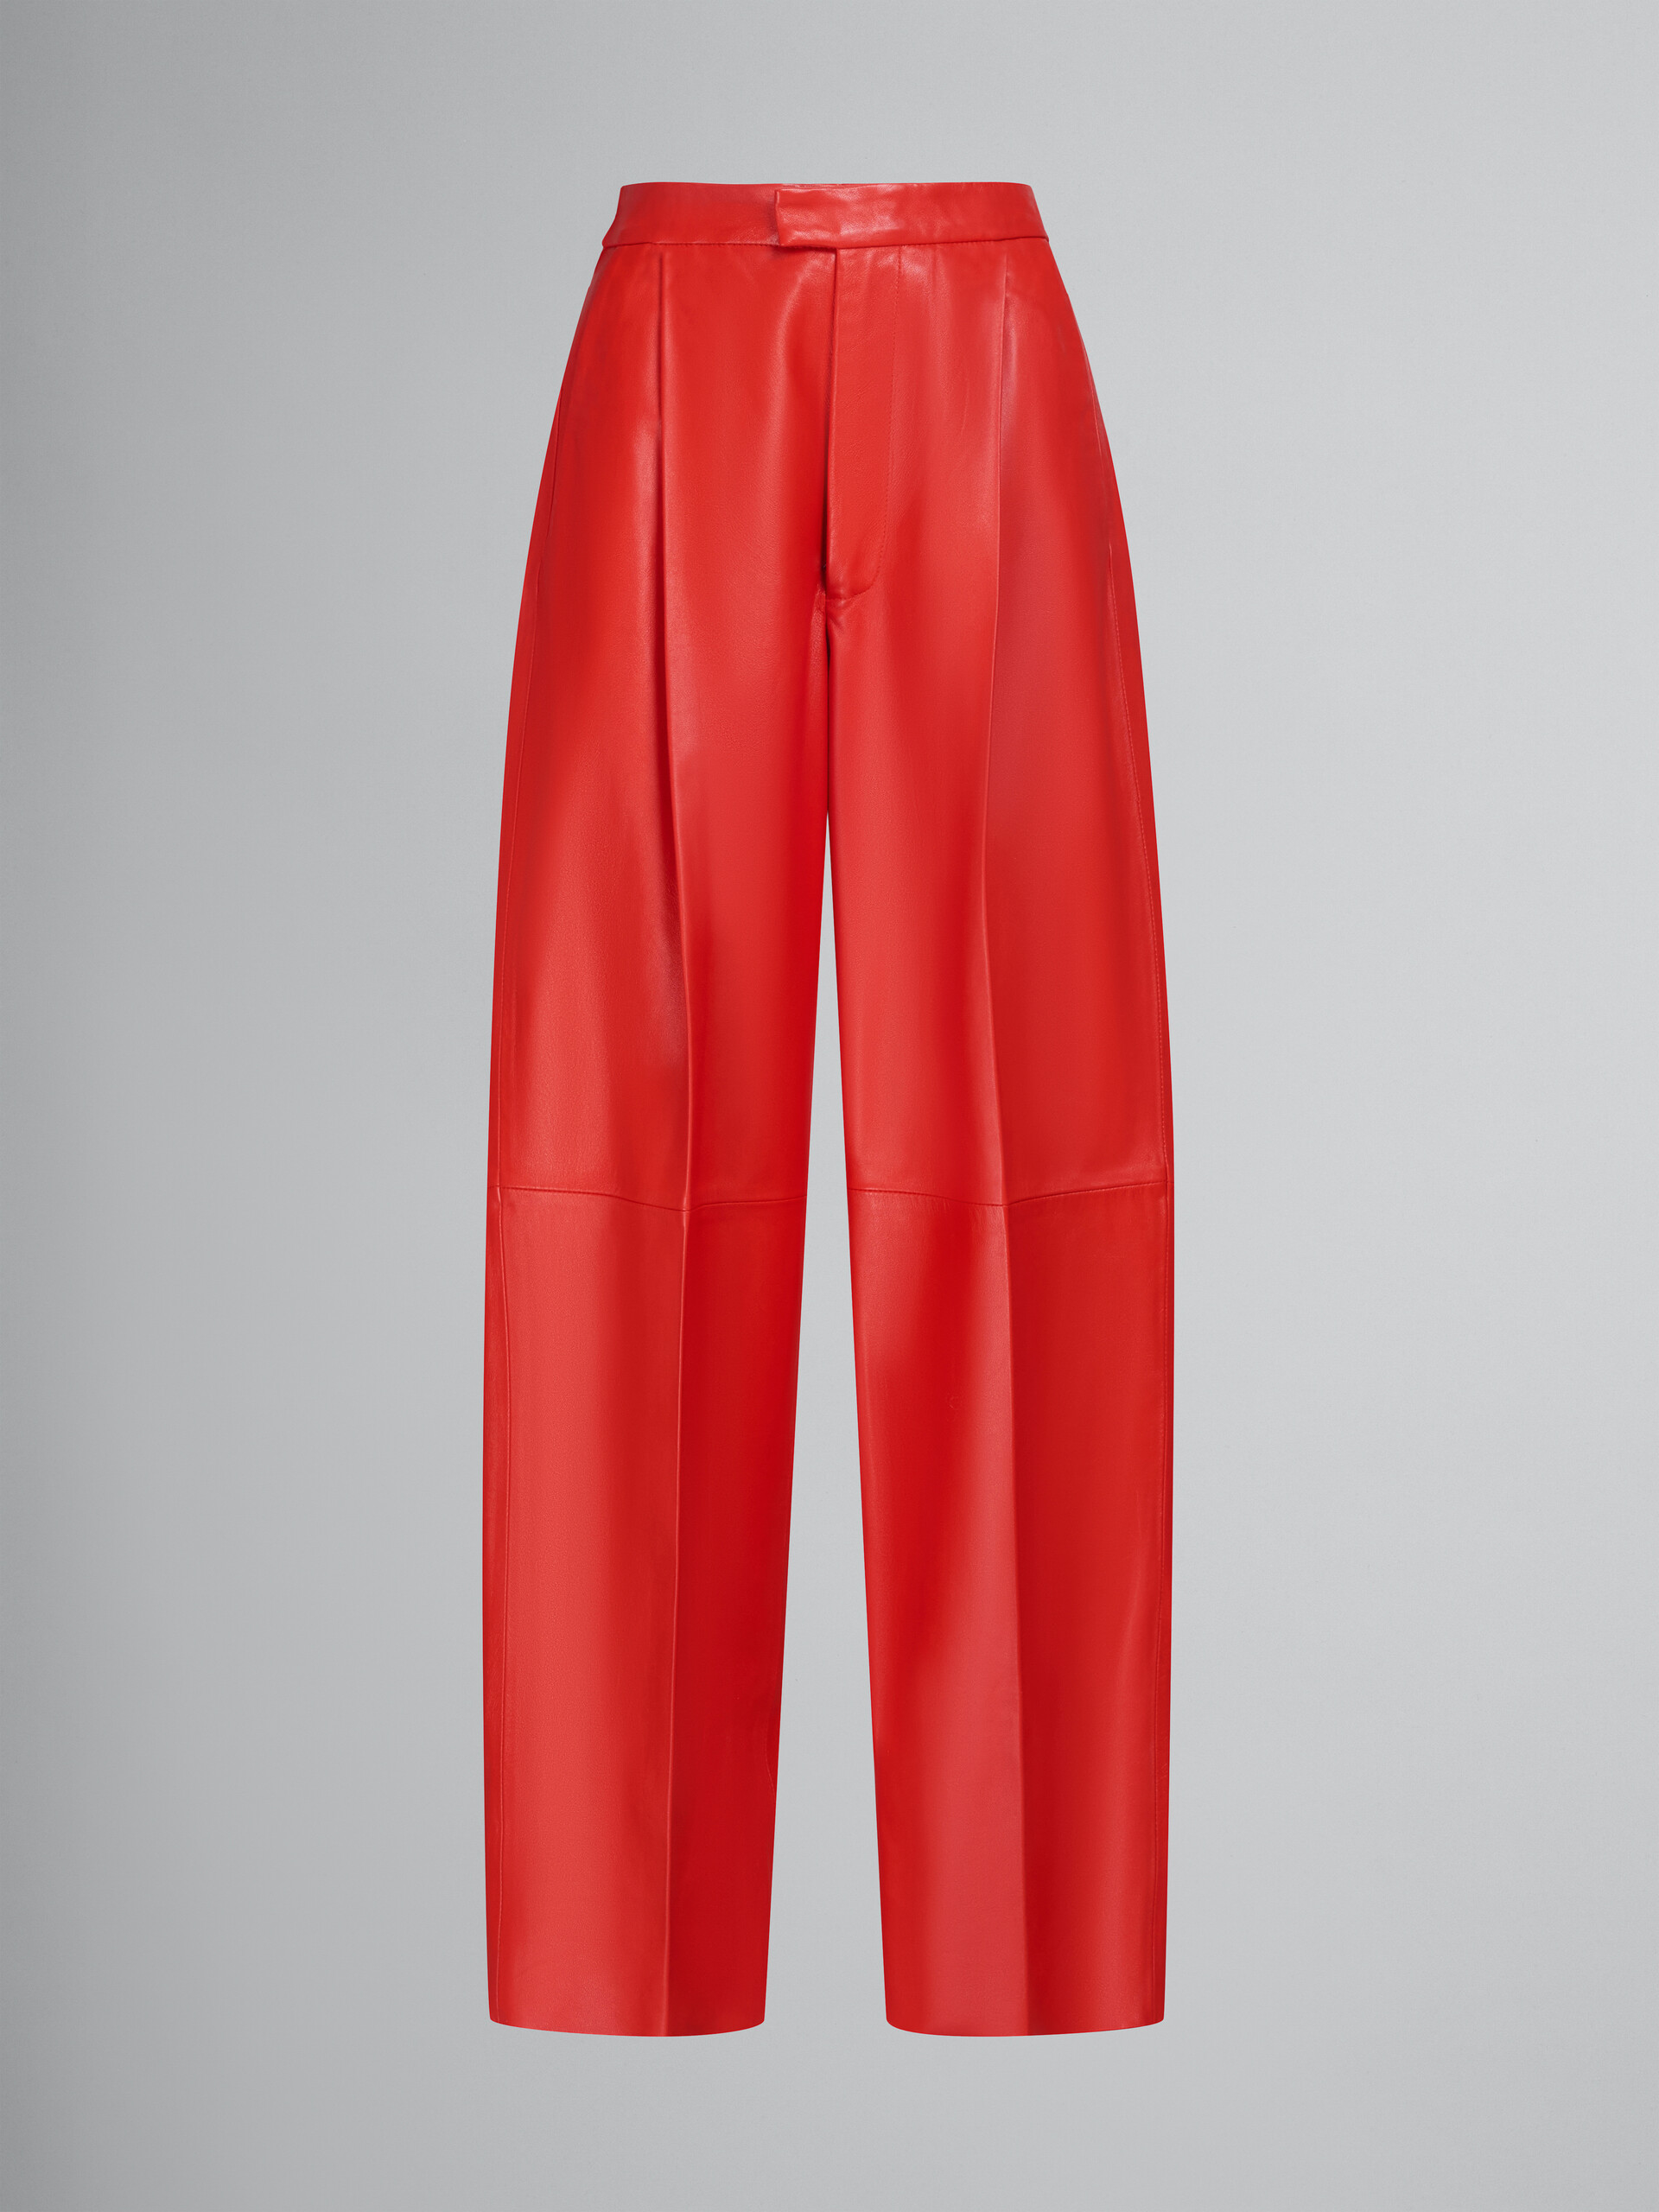 Pantalón de sastre rojo de piel de napa - Pantalones - Image 1